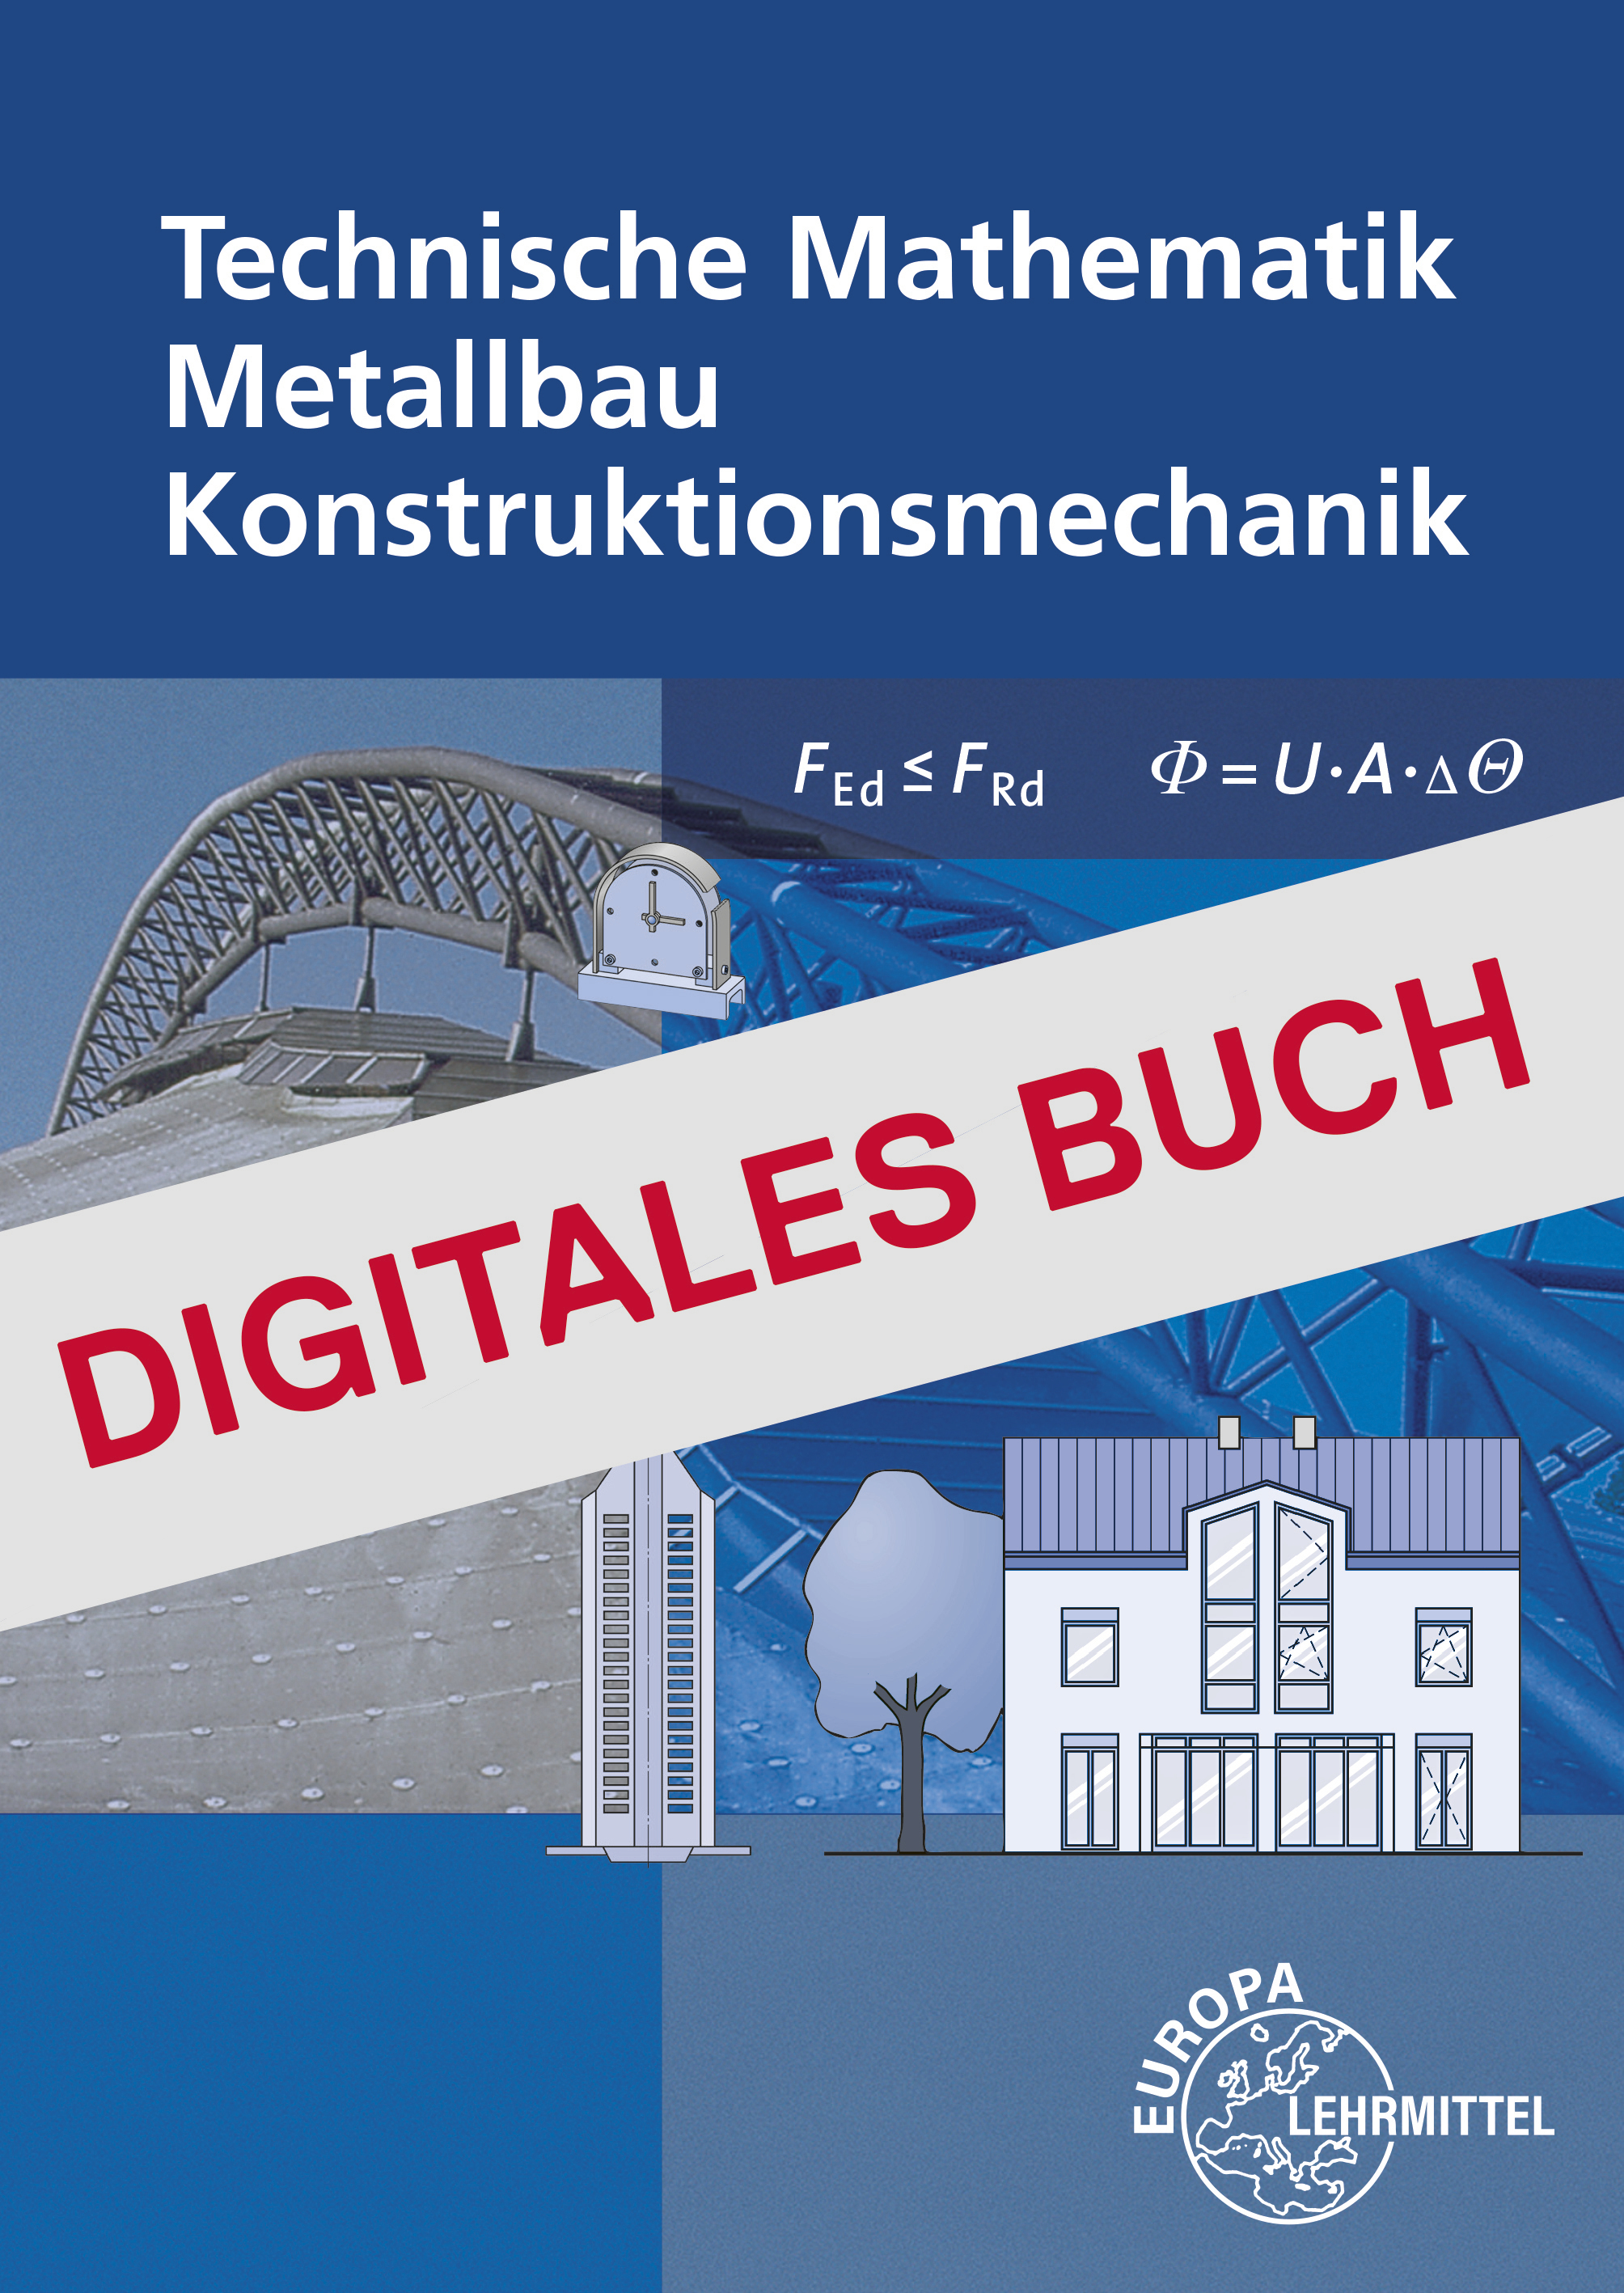 Technische Mathematik Metallbau Konstruktionsmechanik mit Formeln Digitales Buch